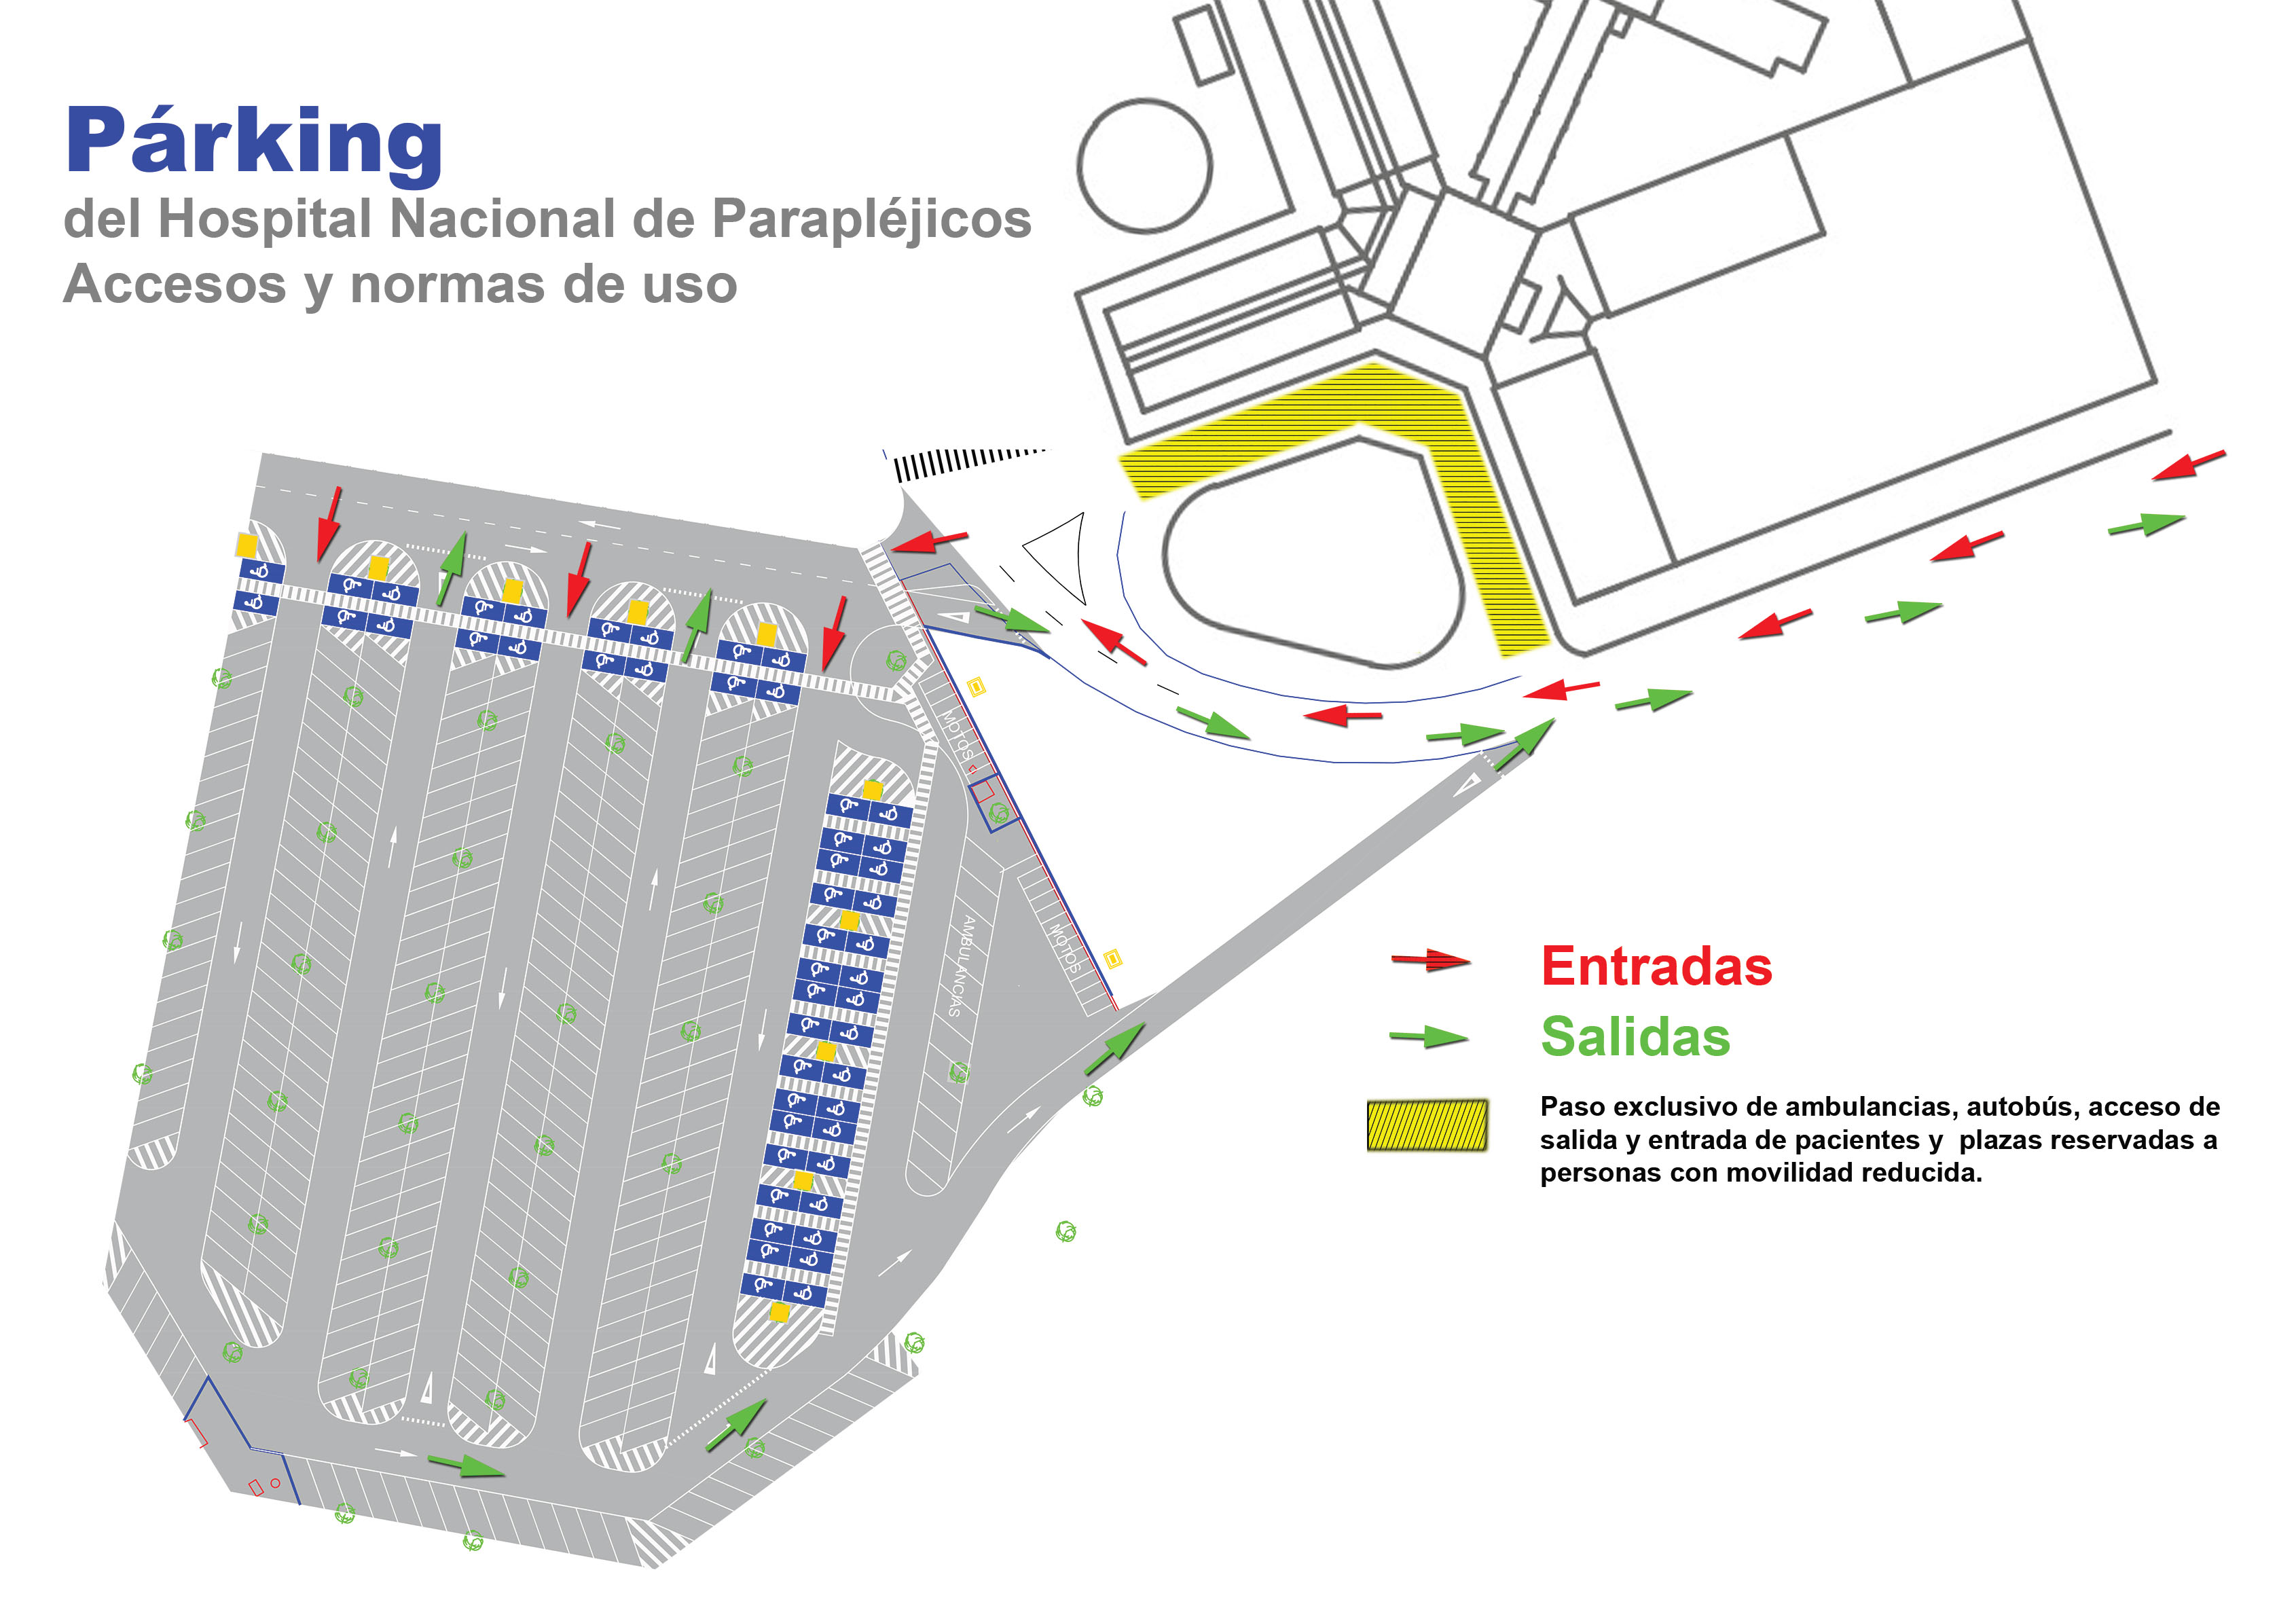 Plano del parking del hospital, gráfico esquematizado (Pulse para ampliar la imagen)